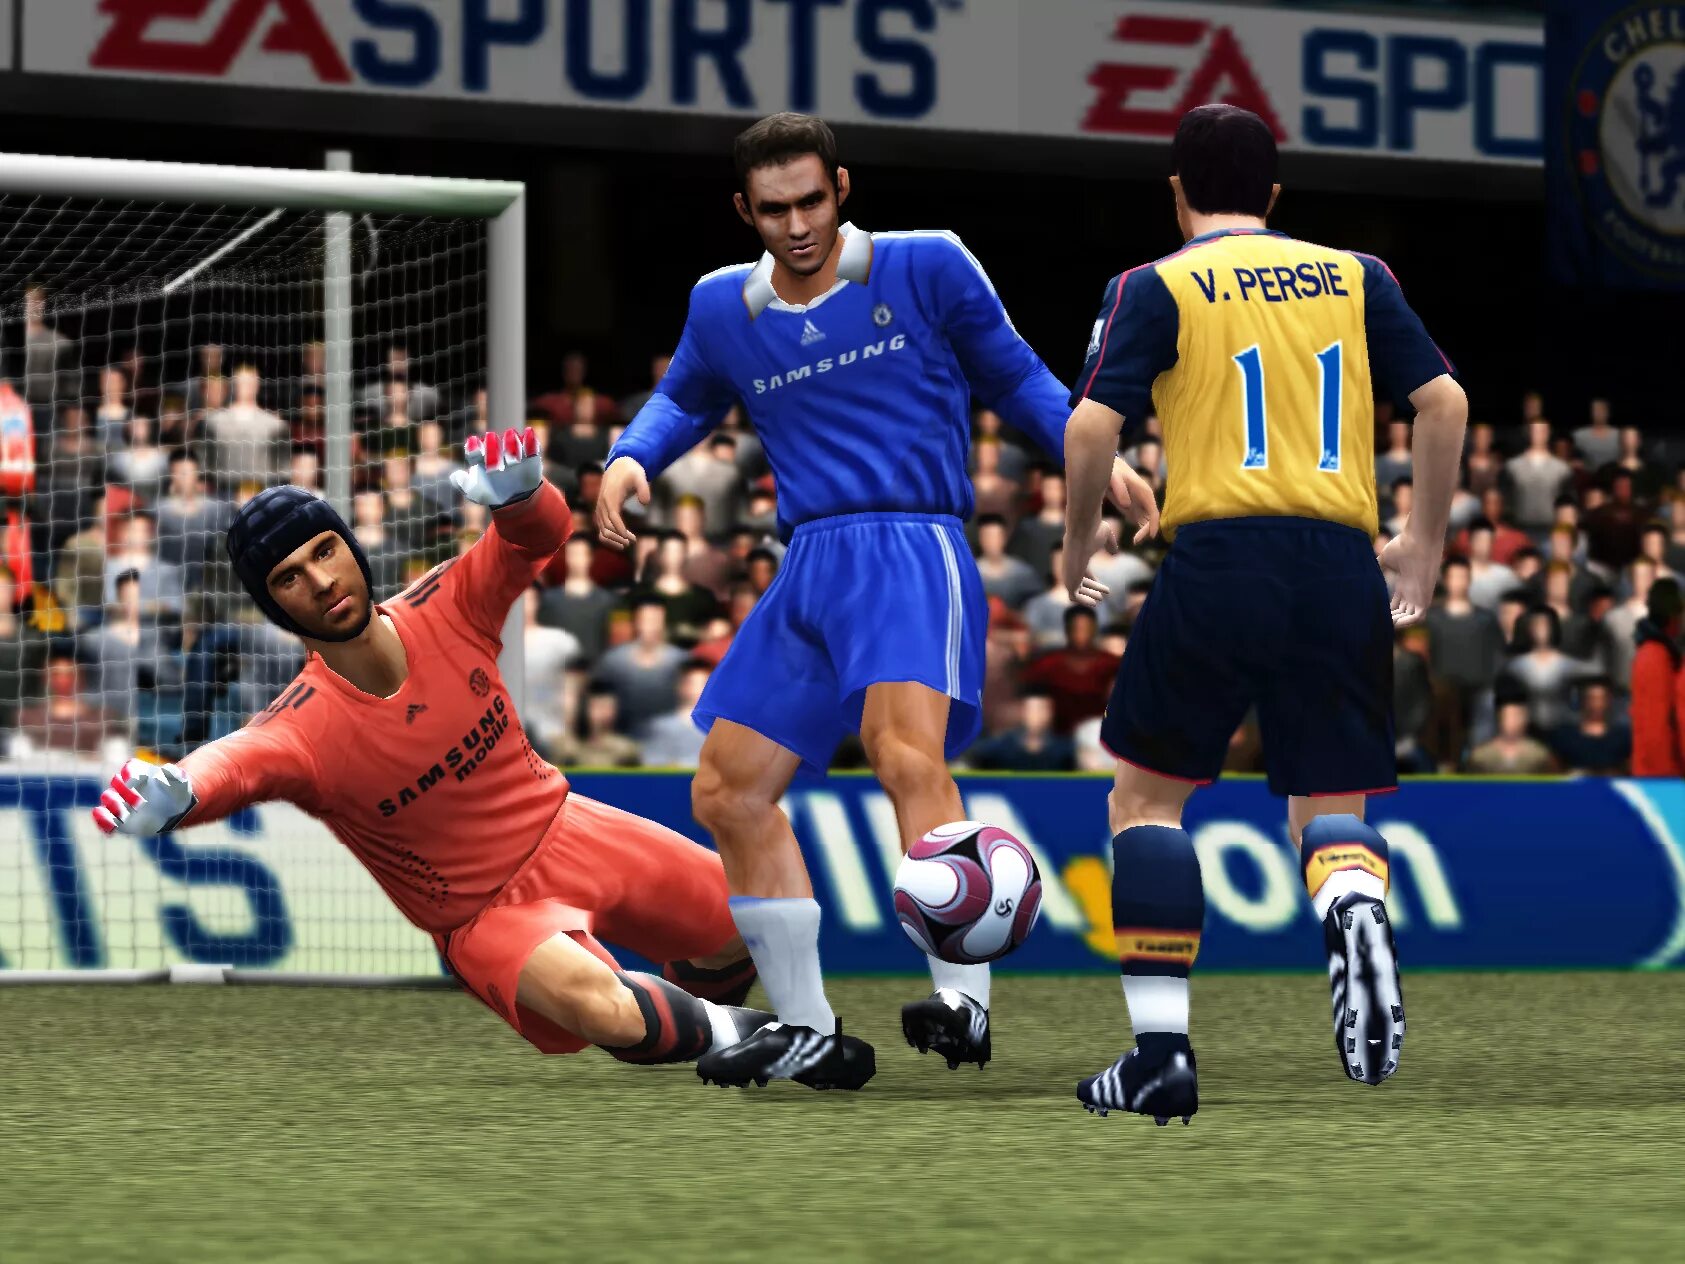 Fifa igruha. FIFA Soccer 09. FIFA 09 (ps2). PLAYSTATION 2 FIFA 09. FIFA 08 ps2.